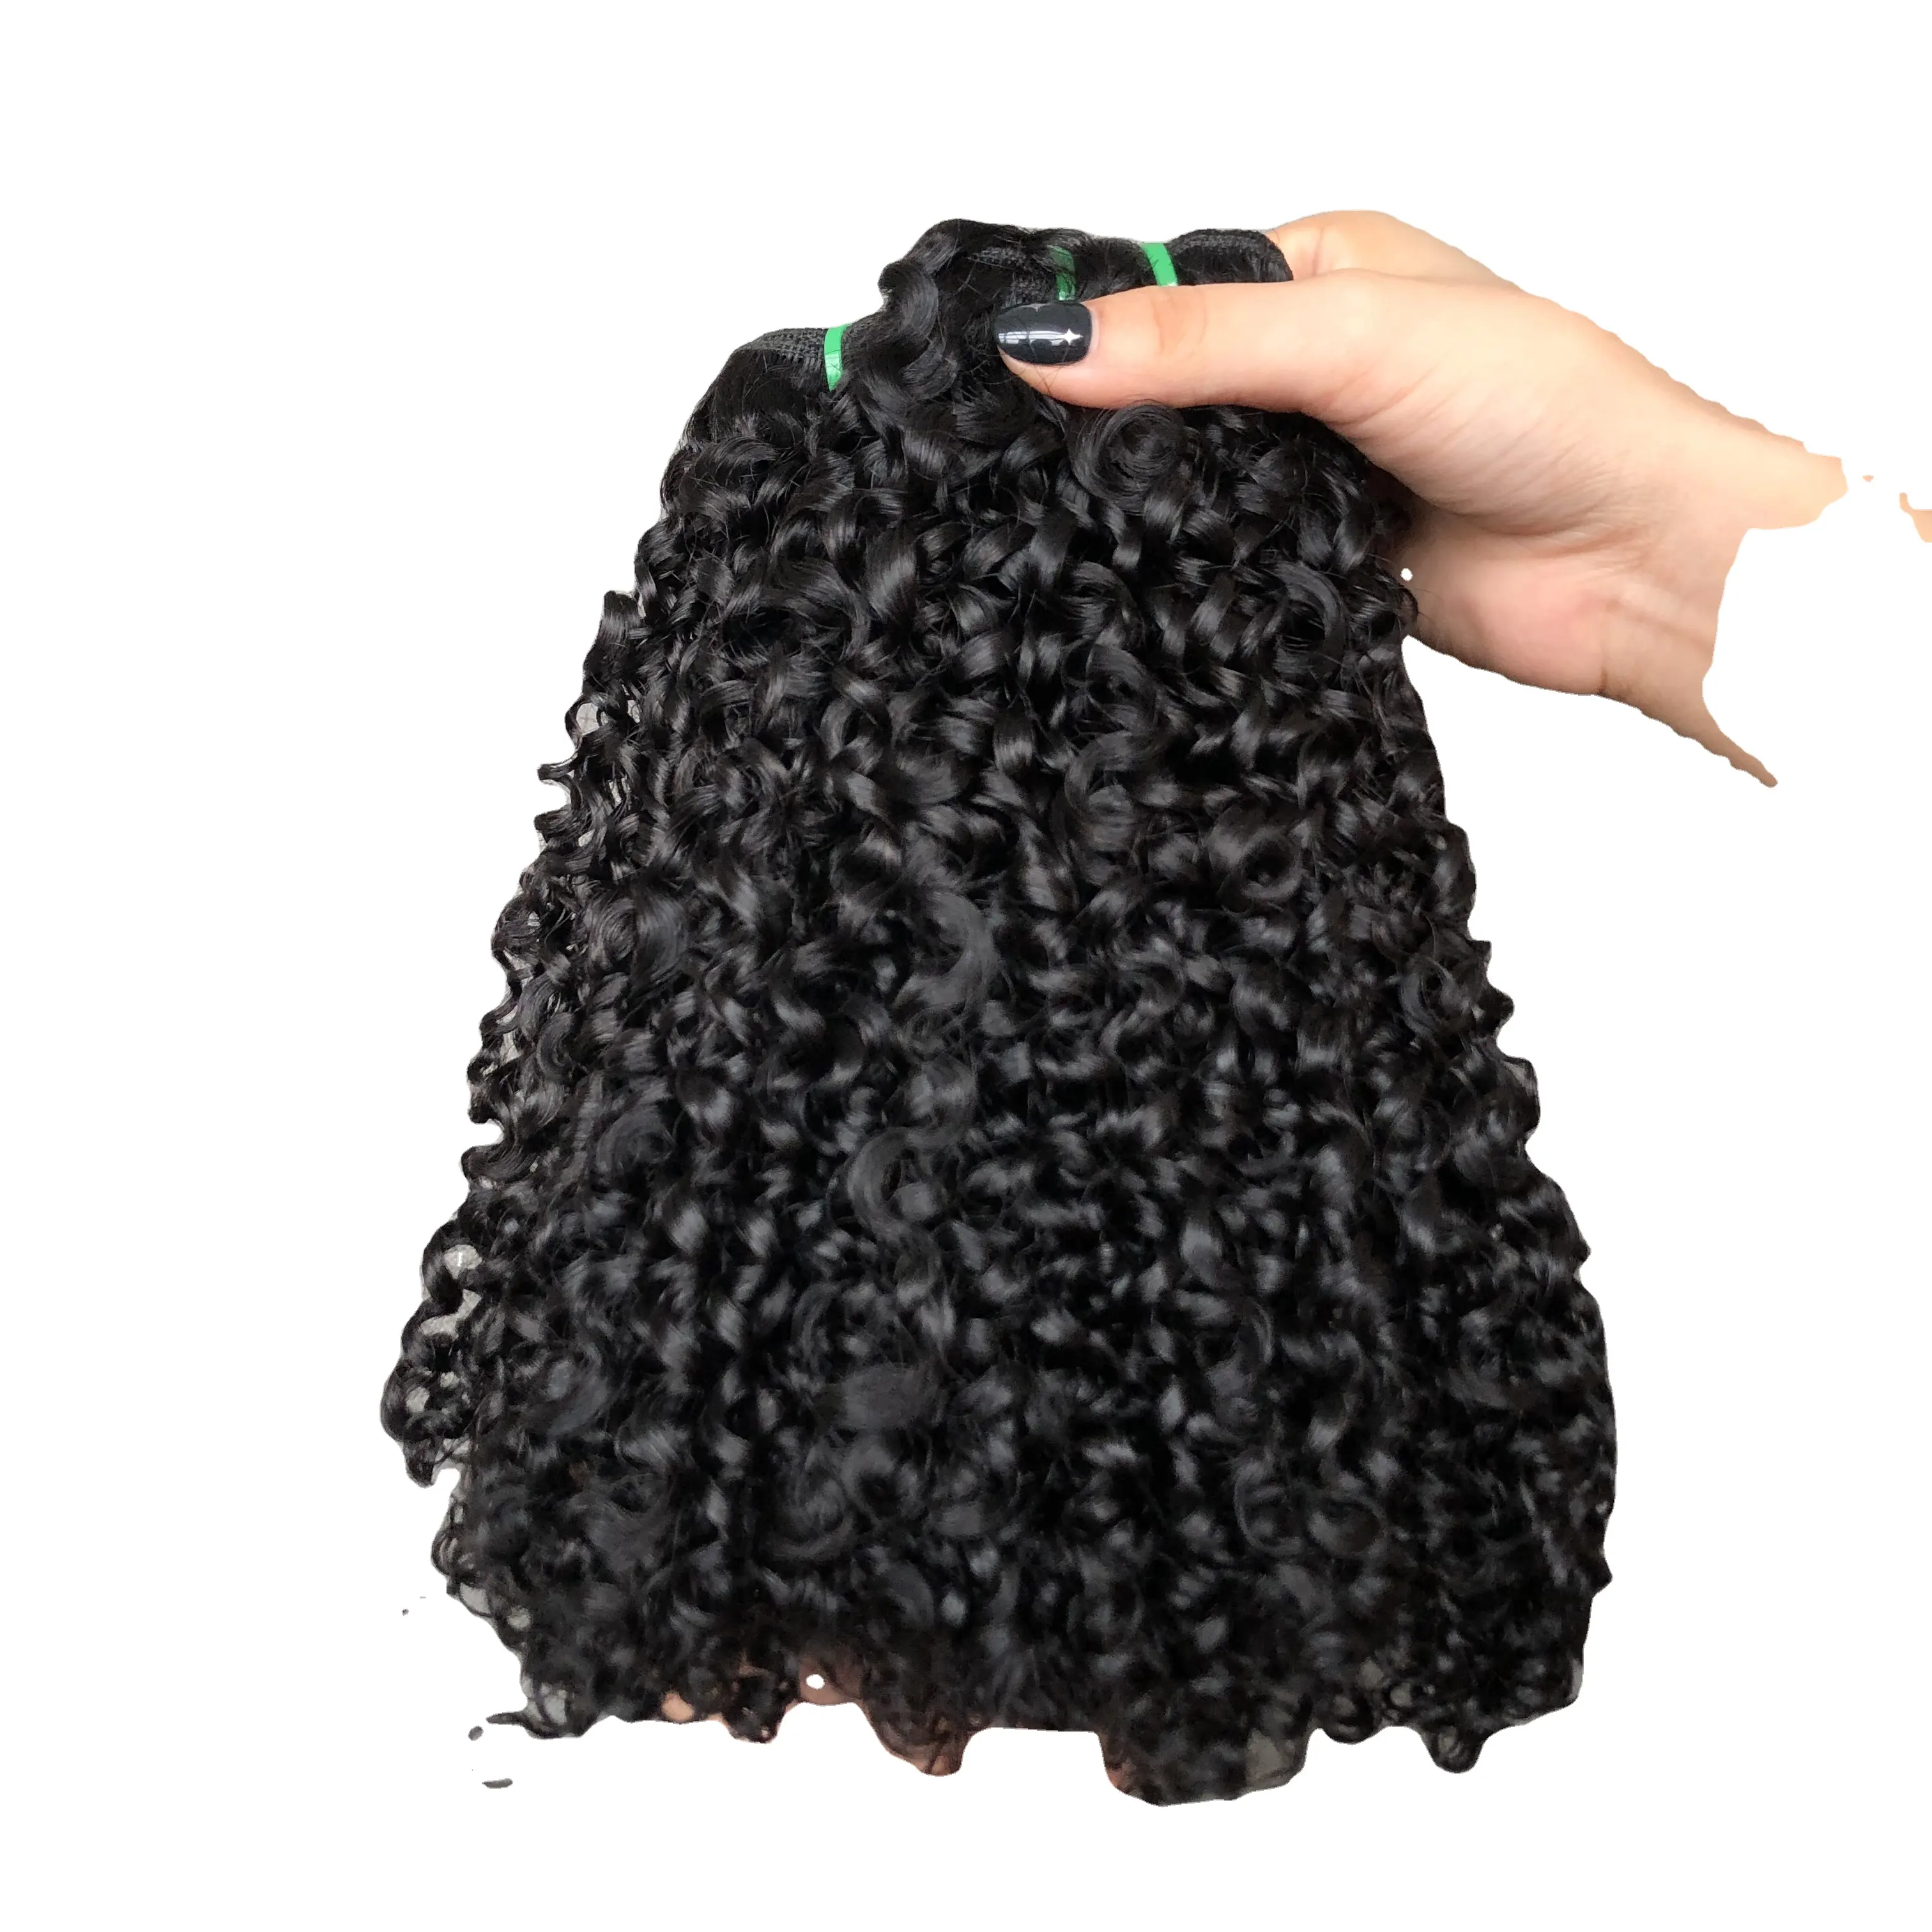 Hochwertige Haarbündel doppelt gezeichnet Pixie Lockenbündel 100 % menschliches Haar brasilianisches Haar natürliche Farbe Maschine doppelter Flechtung